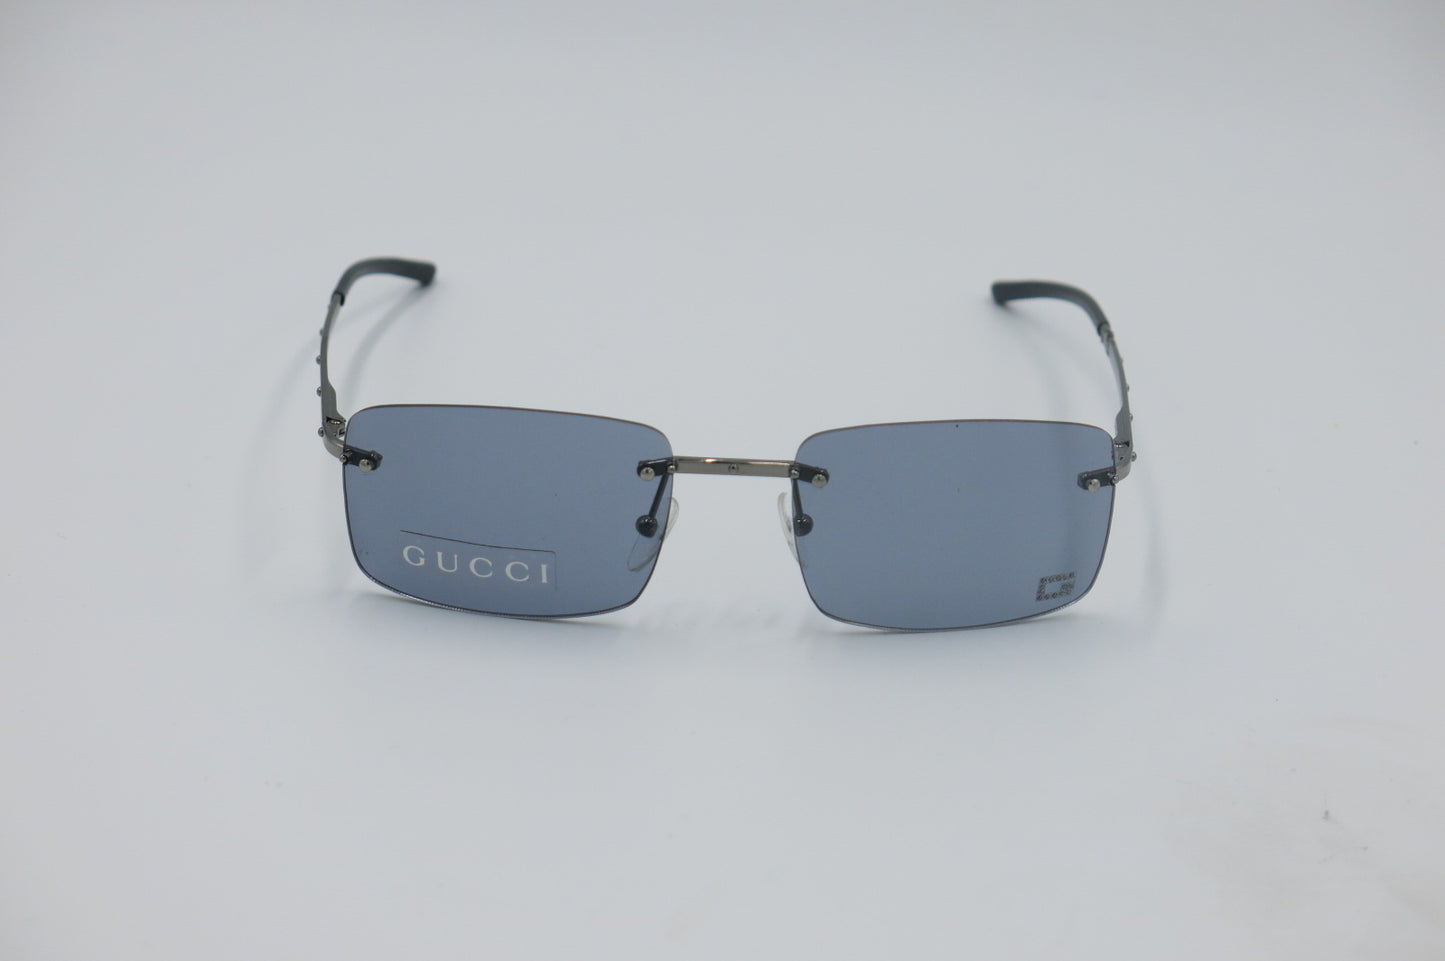 GUCCI Sunglasses GG 1756